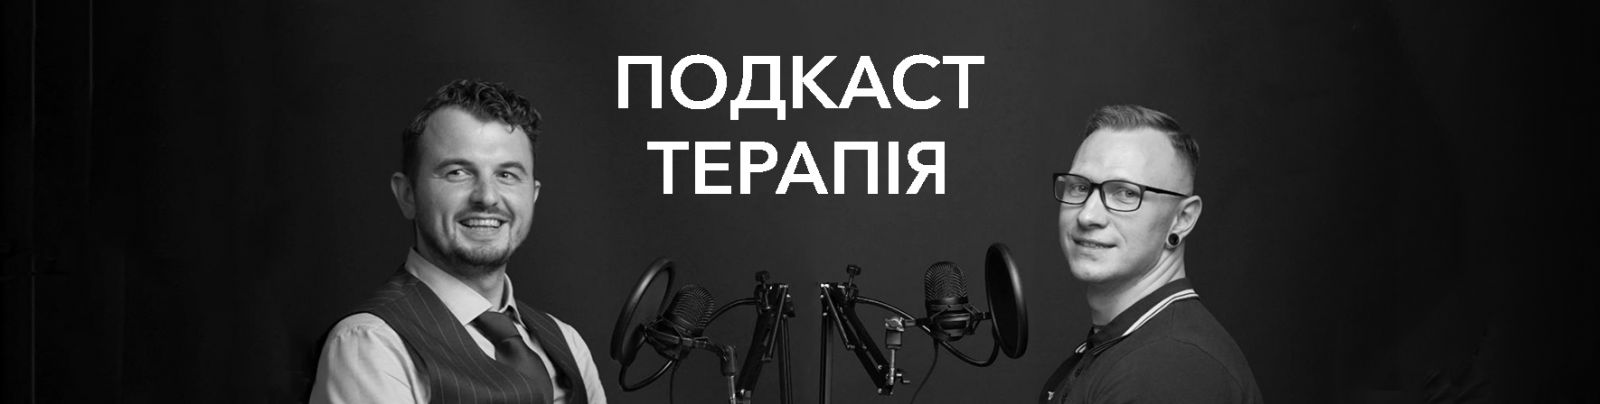 Podcast Terapia u Rivnomu